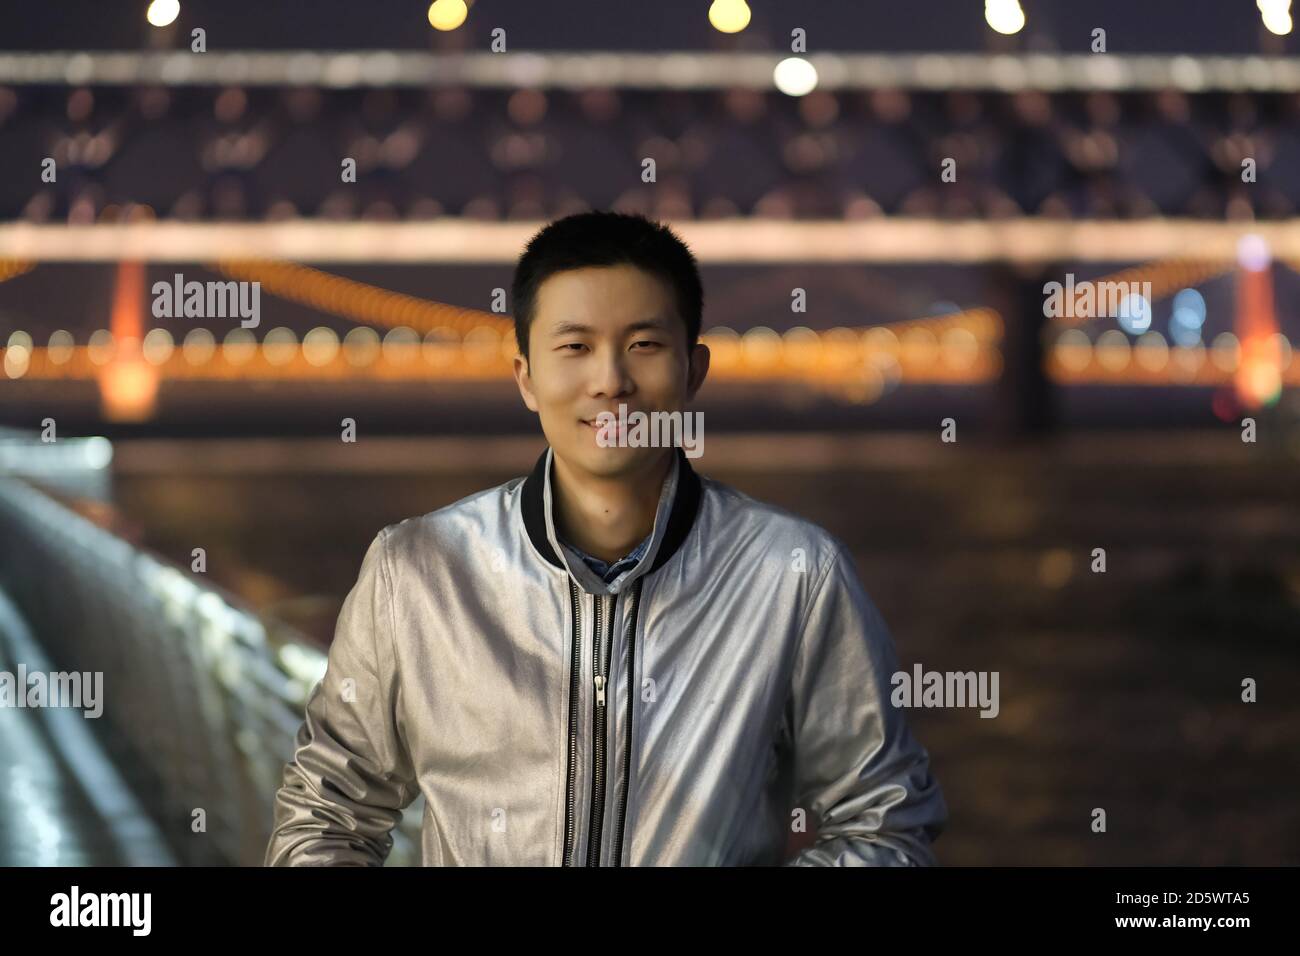 Prise de vue moyenne d'un jeune homme asiatique regardant l'appareil photo la nuit. Sourire heureux. Le pont du fleuve Yangtze de Wuhan a été défoqué comme arrière-plan Banque D'Images